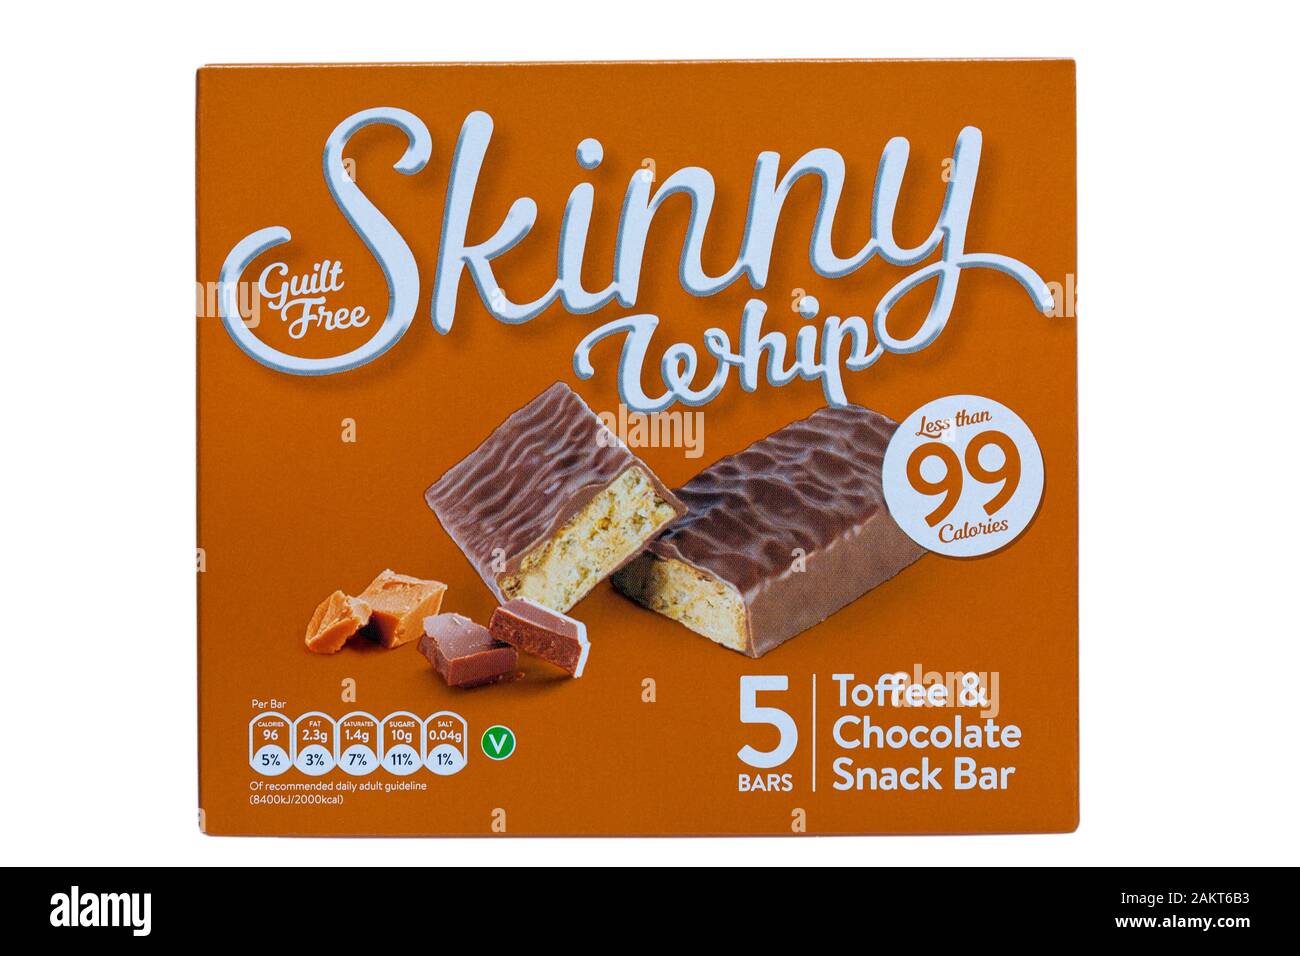 Fort de la culpabilité de caramel et chocolat Whip Skinny Snack-bar isolé sur fond blanc - moins de 99 calories Banque D'Images